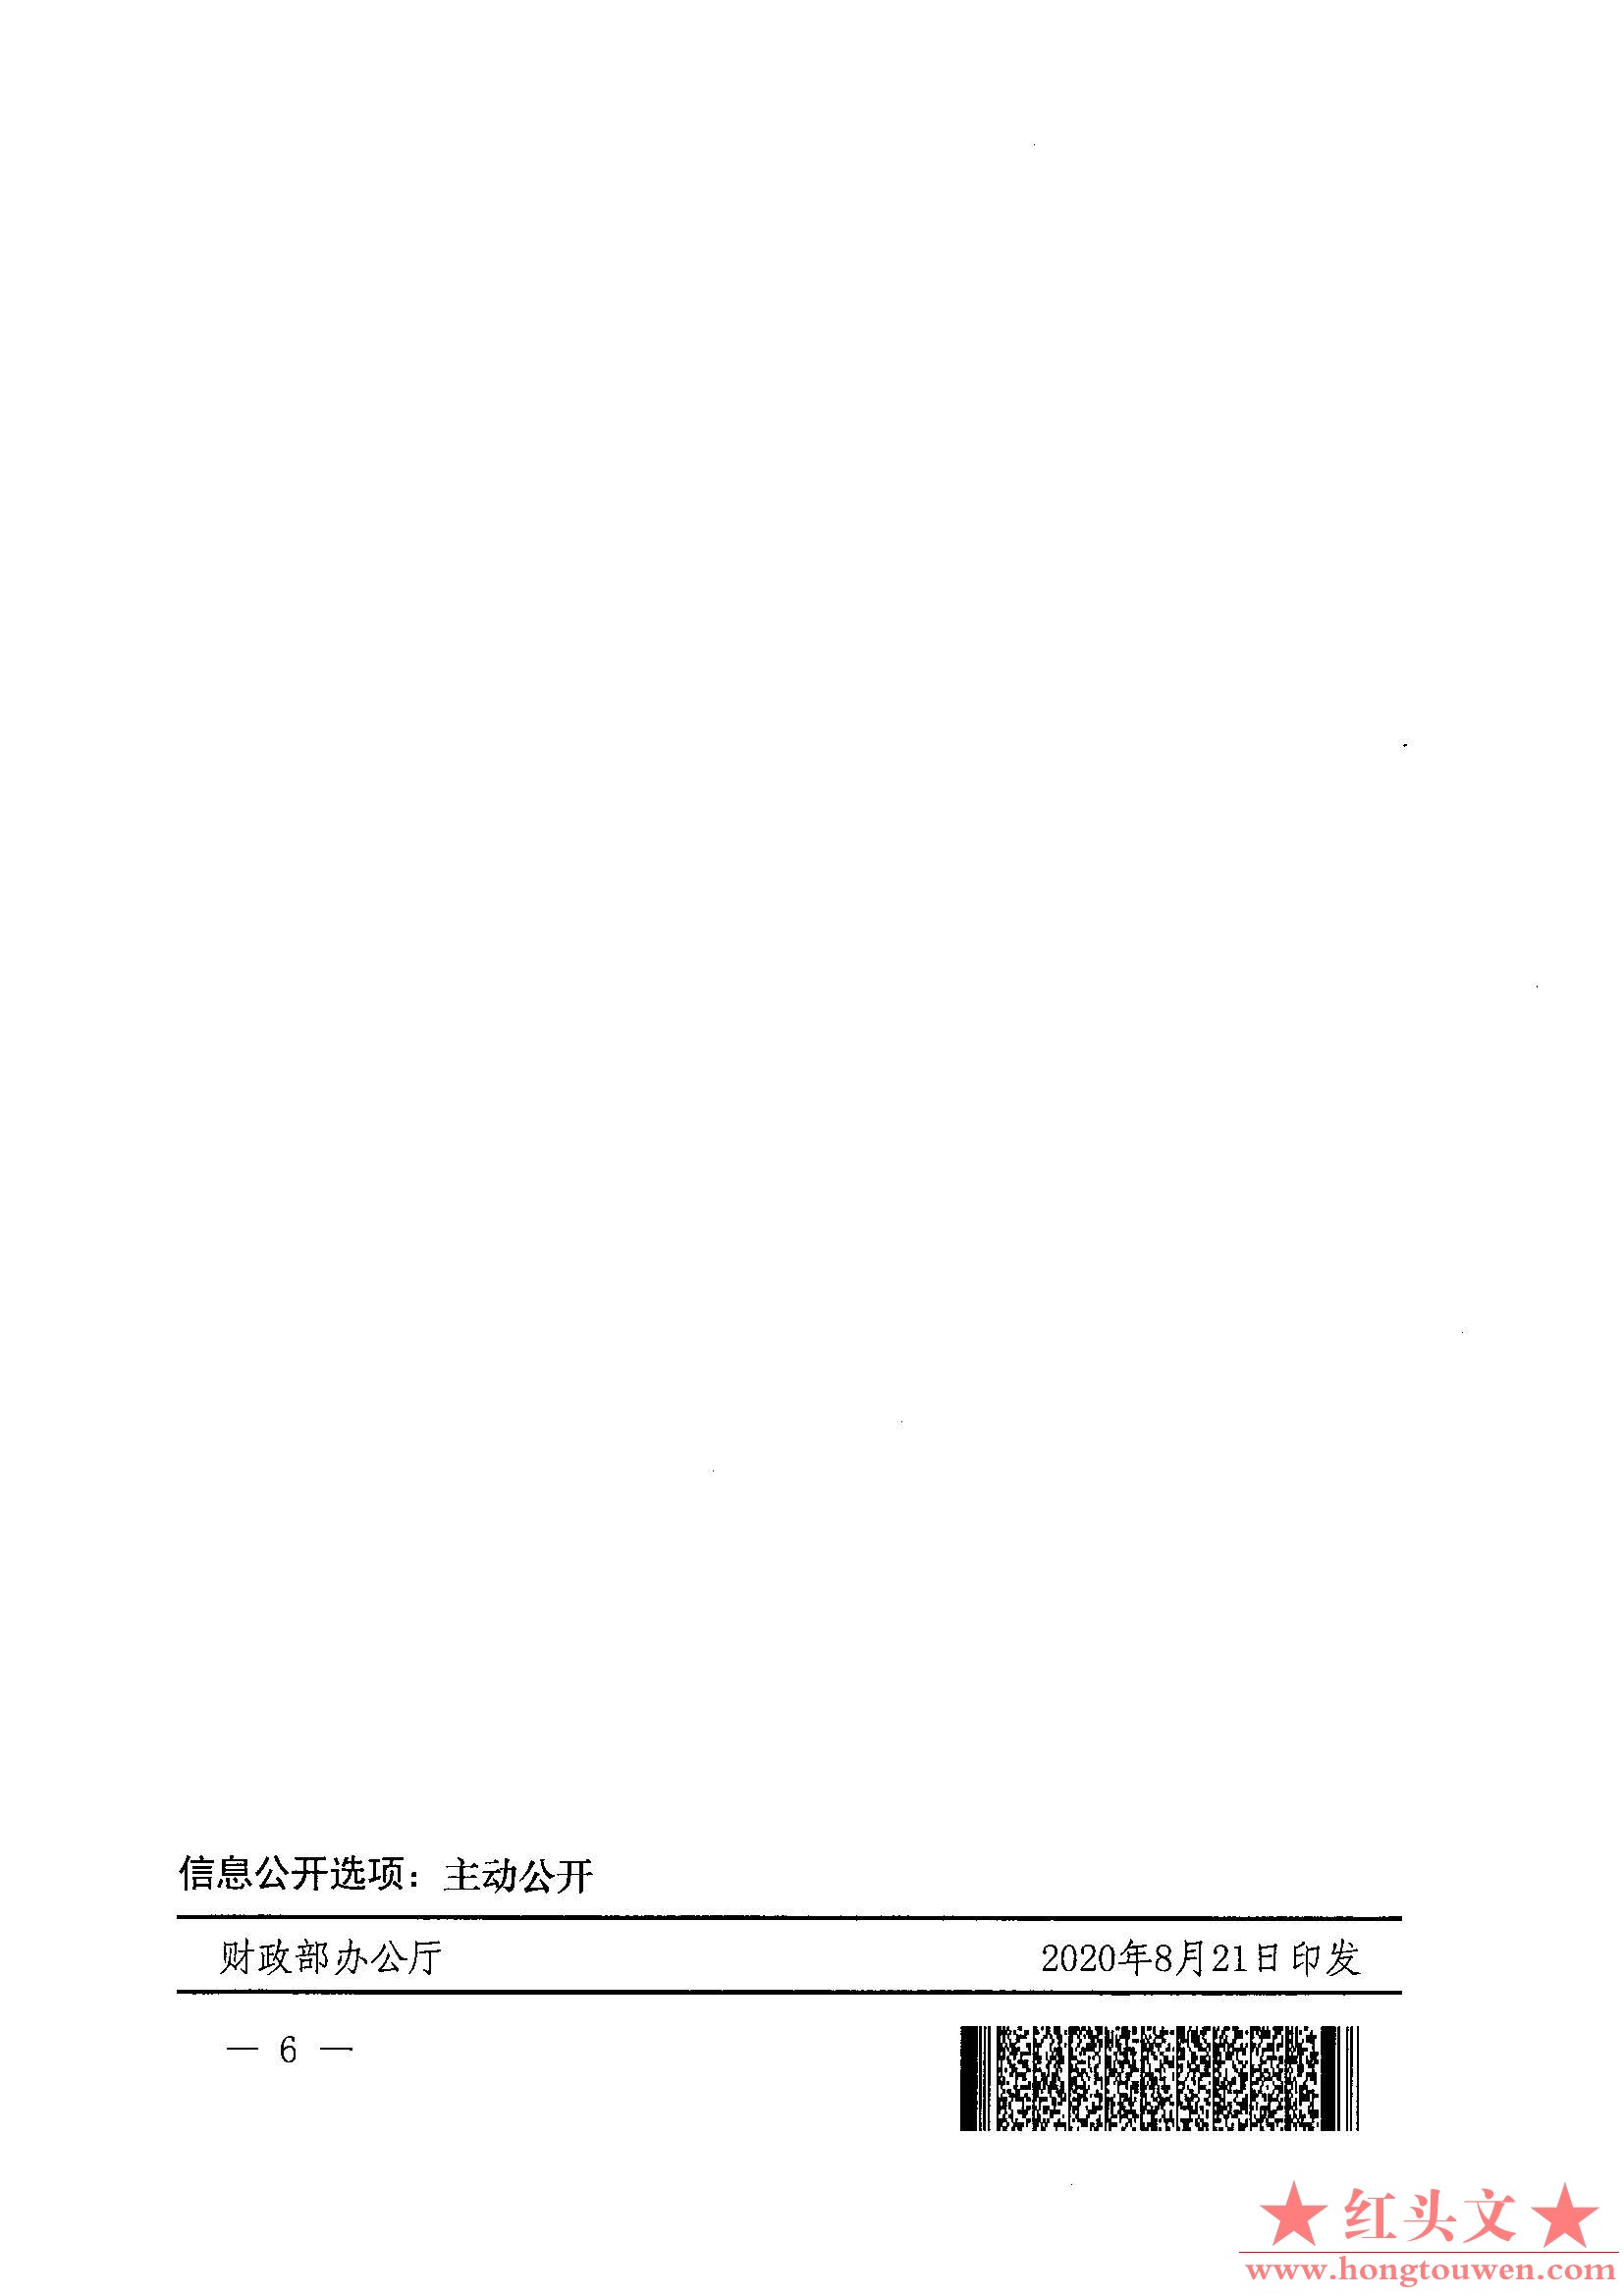 财会[2020]12号-财政部 中国银保监会关于进一步规范银行函证及回函工作的通知_页面_6.jpg